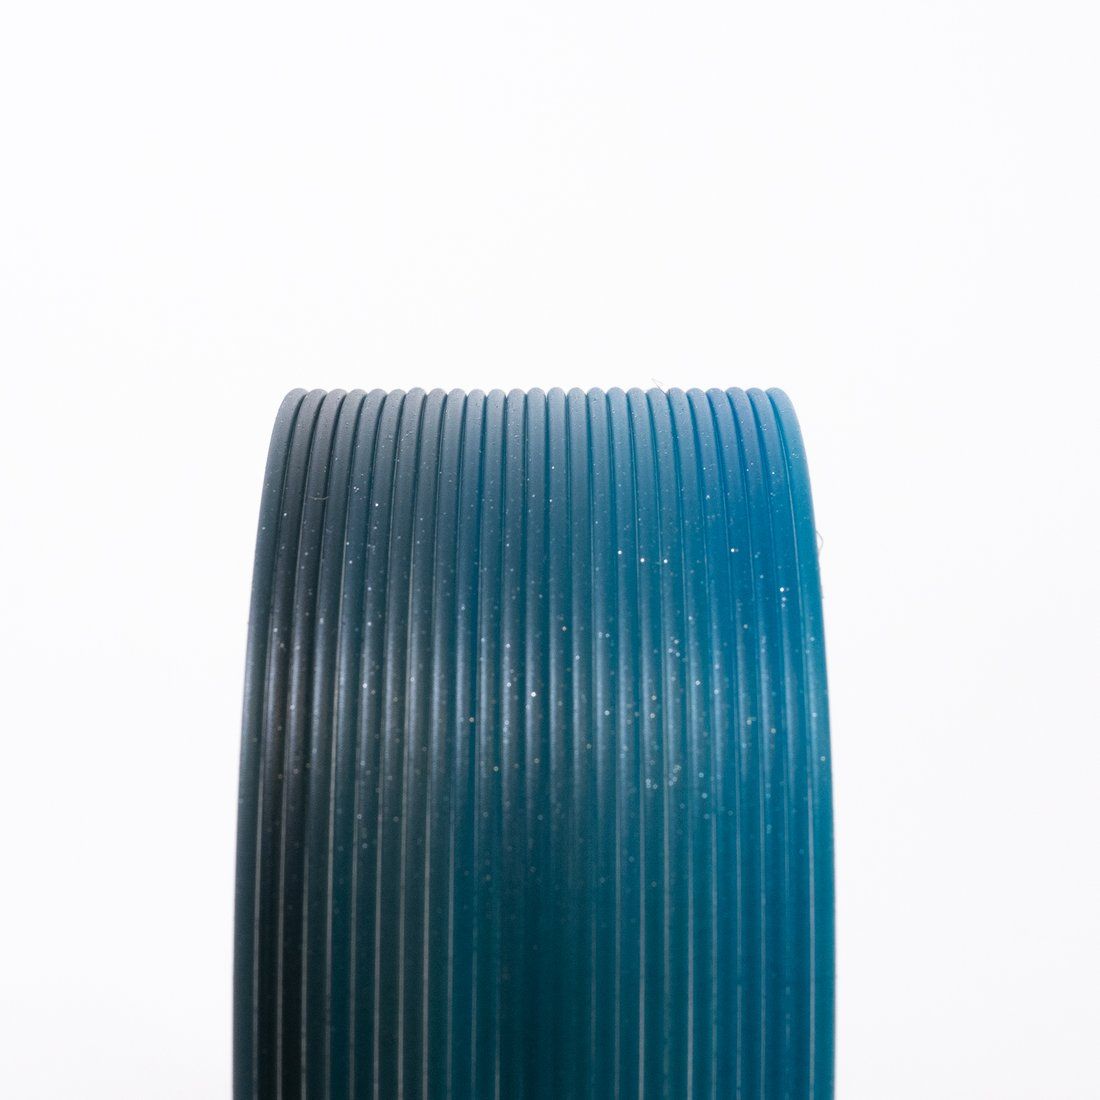 Midnight Multicolour HTPLA  1.75mm 500gms 3D printing filament Proto-pasta